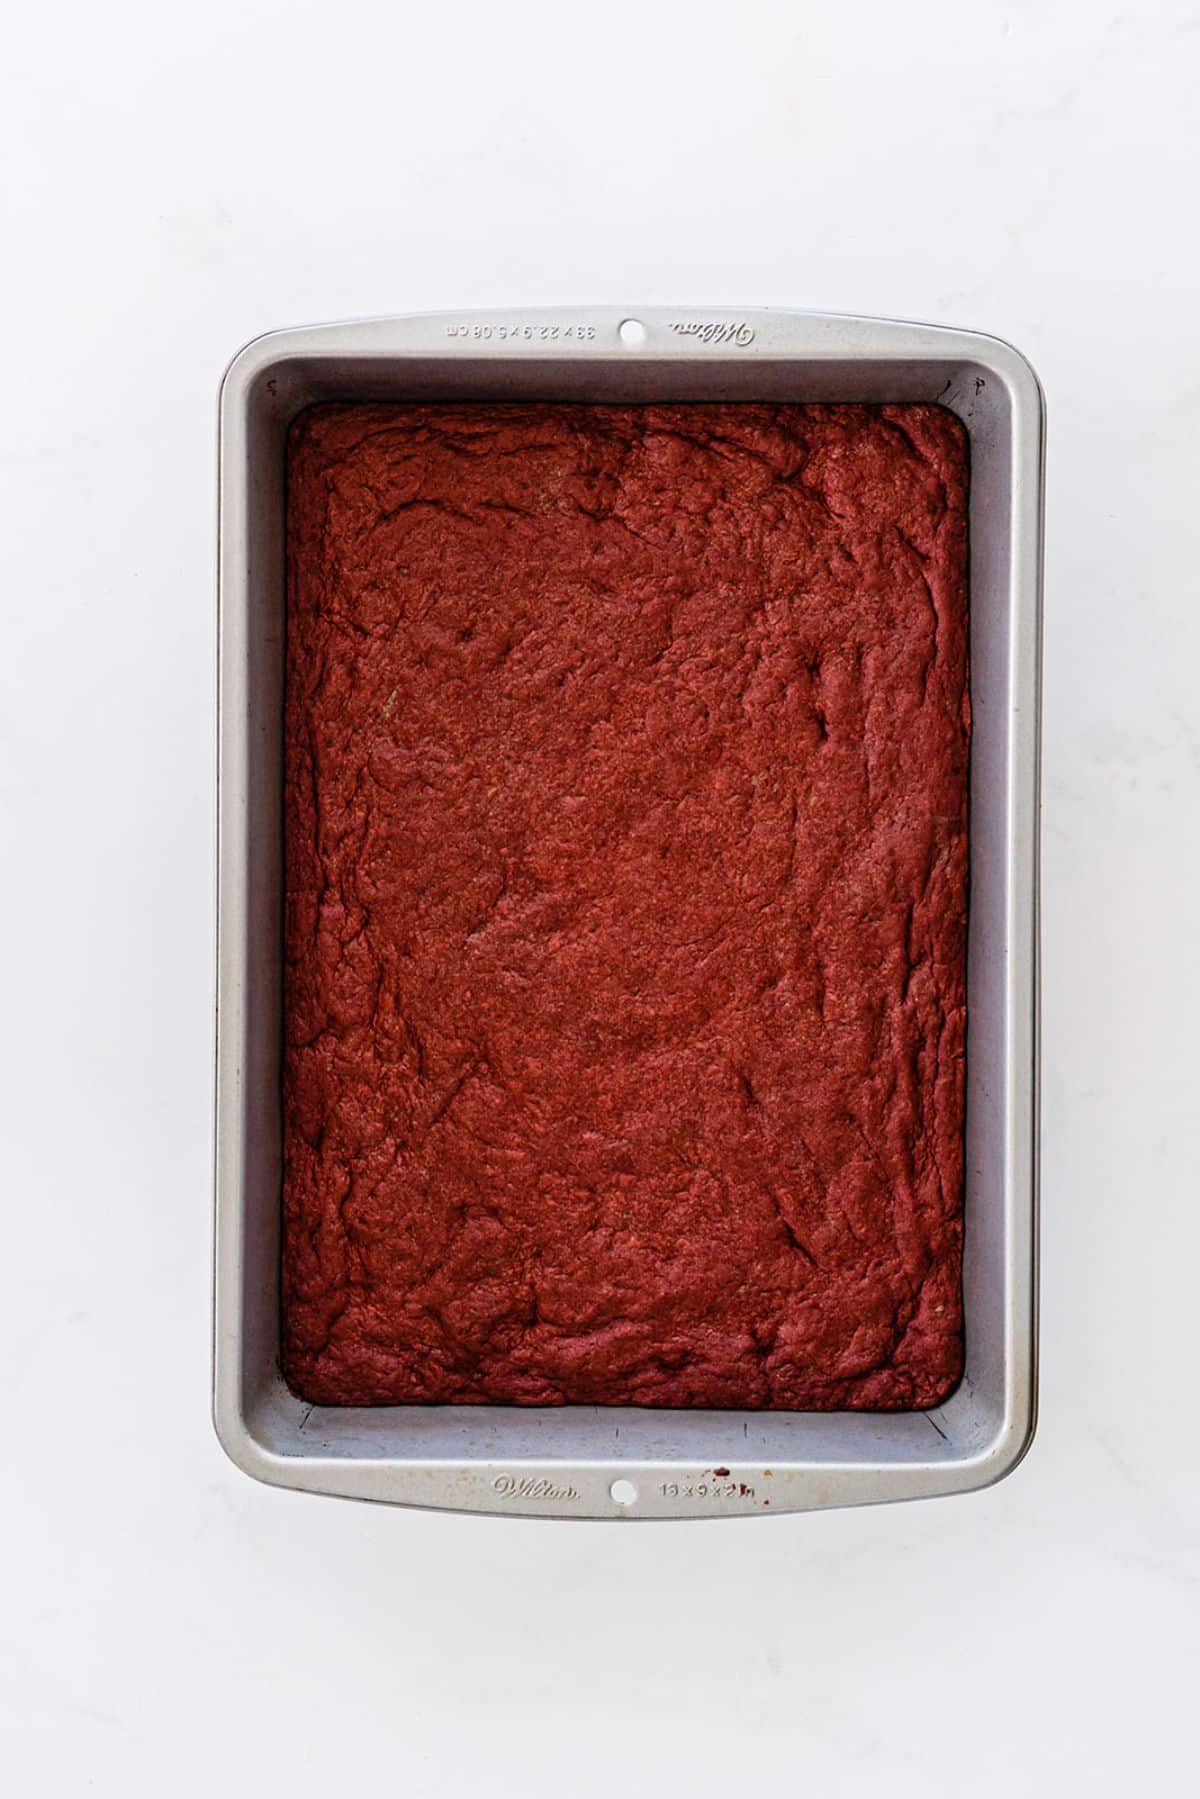 Brownies in the baking pan.